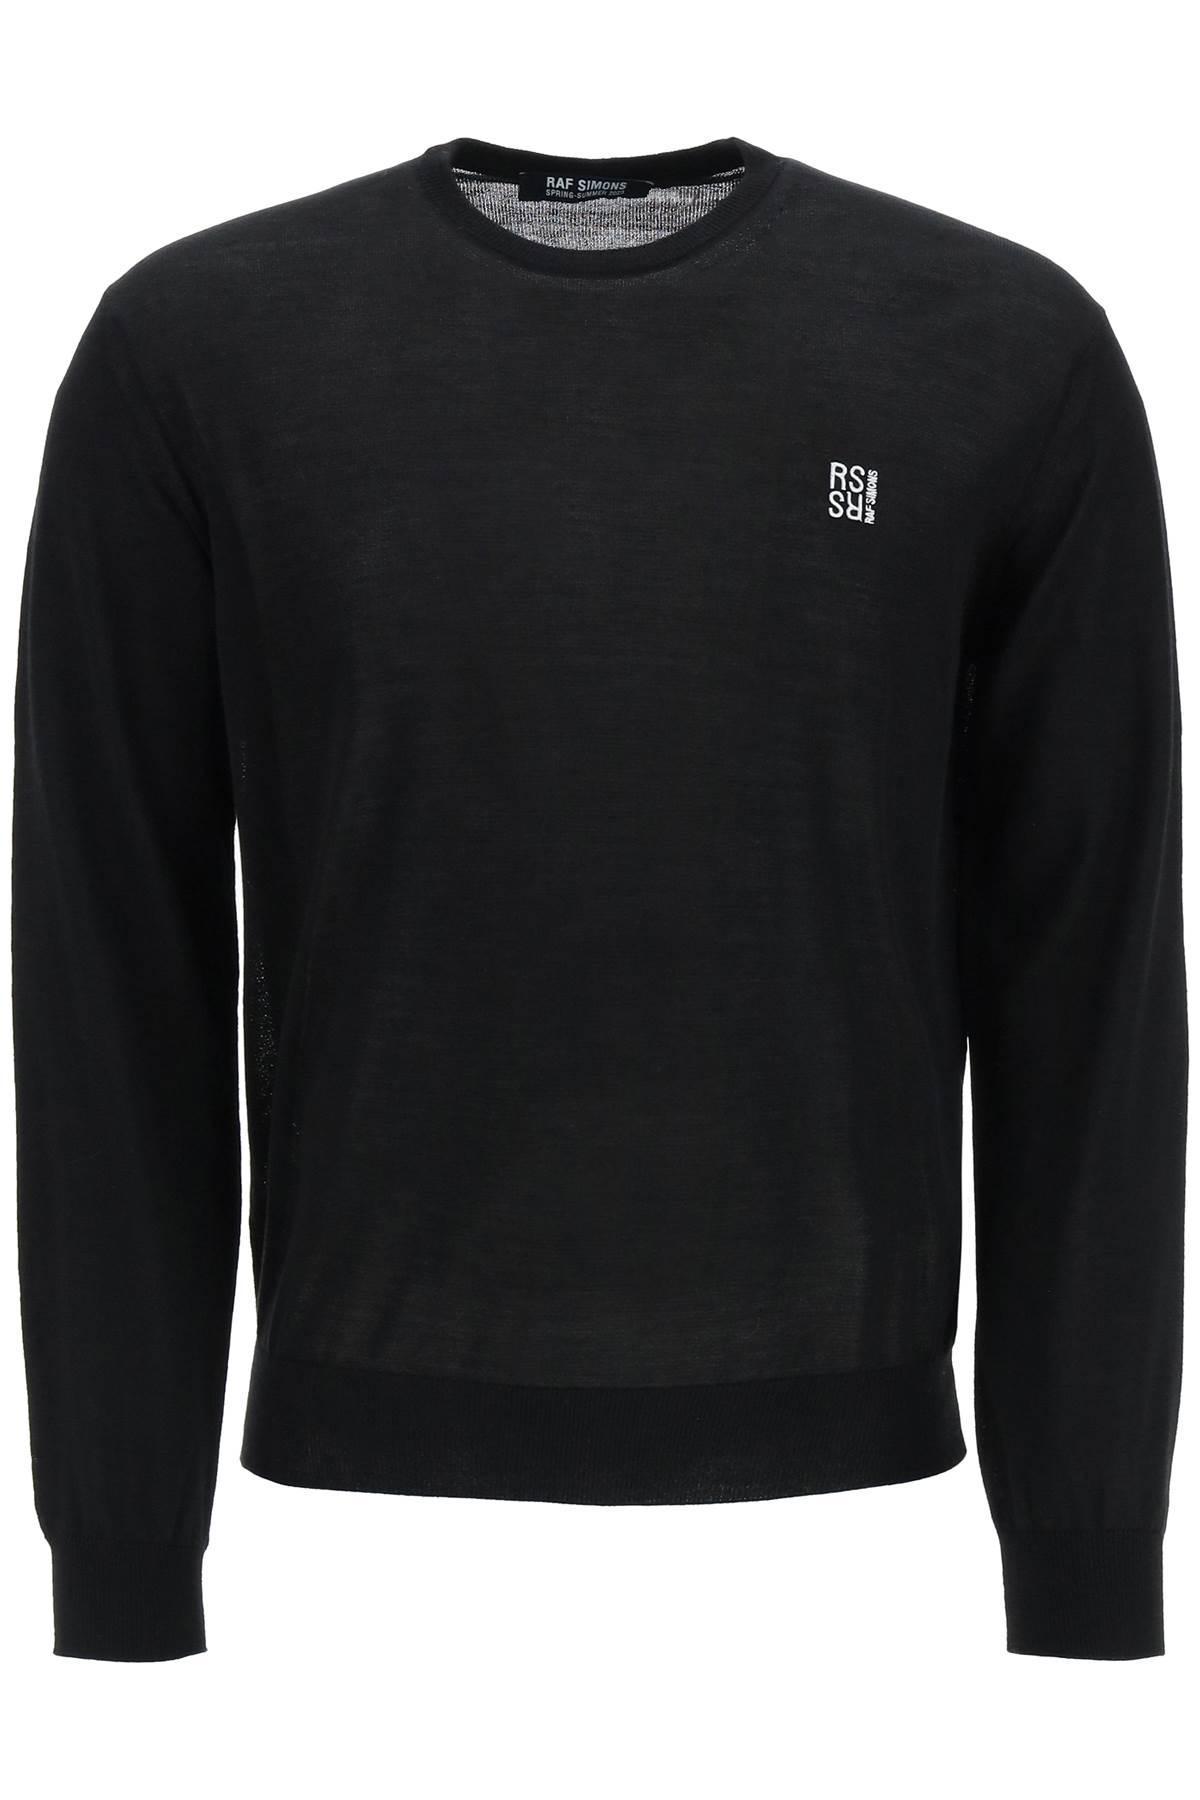 Raf Simons Crew-neck Logo Sweater in Black for Men | Lyst